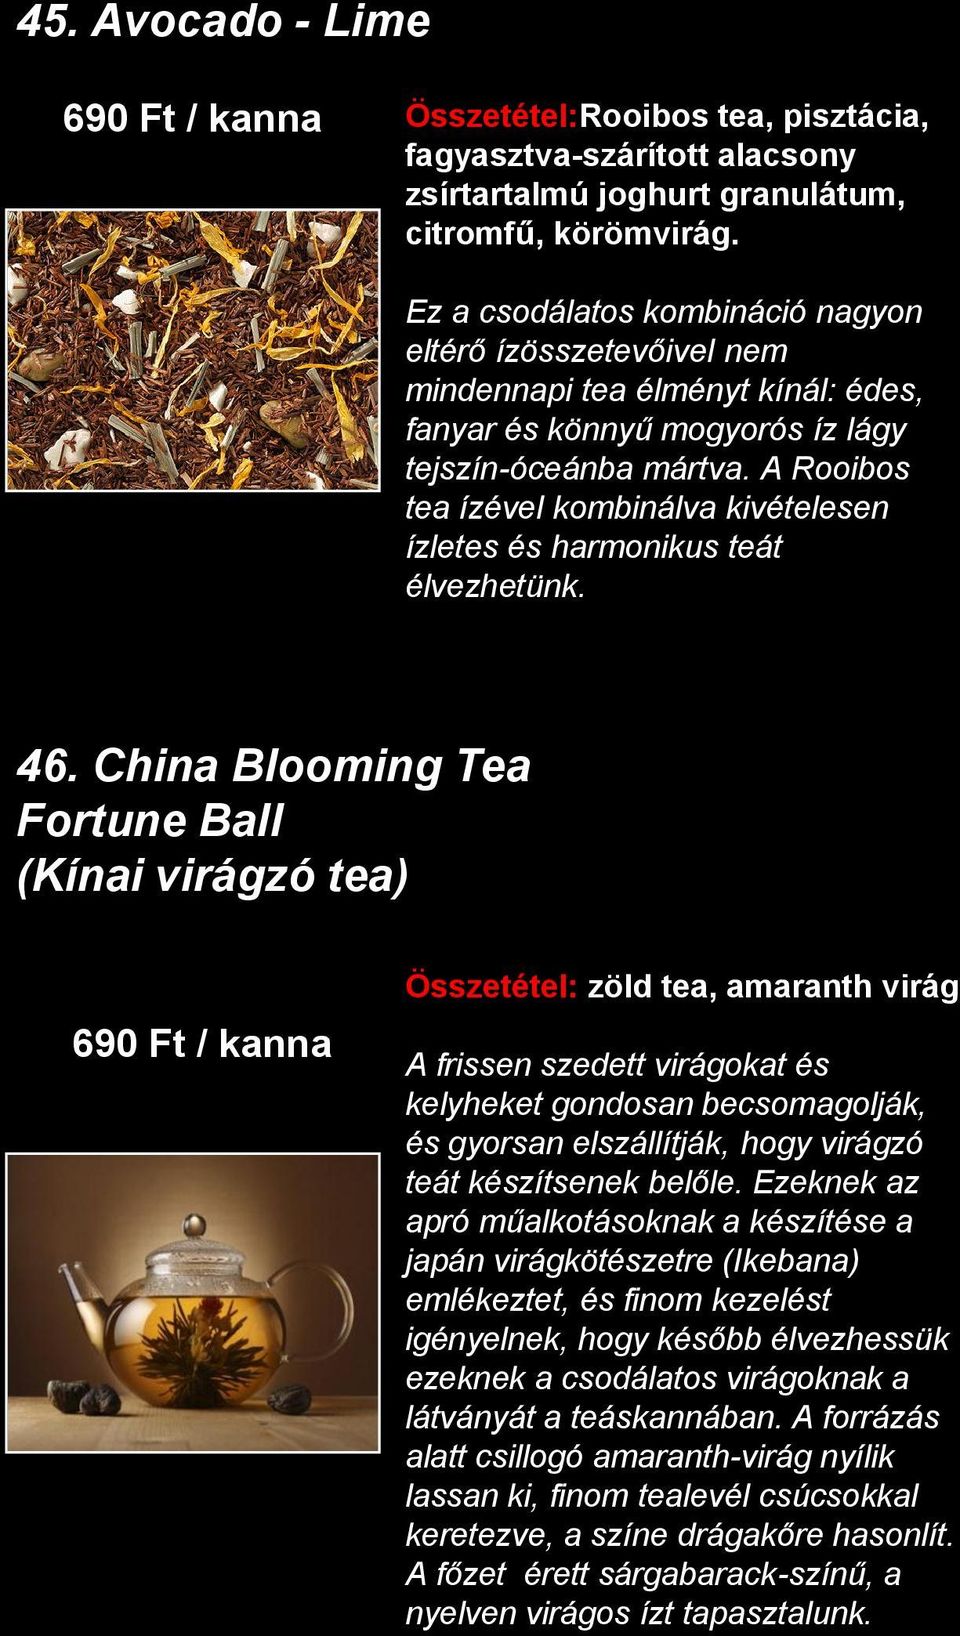 A Rooibos tea ízével kombinálva kivételesen ízletes és harmonikus teát élvezhetünk. 46.